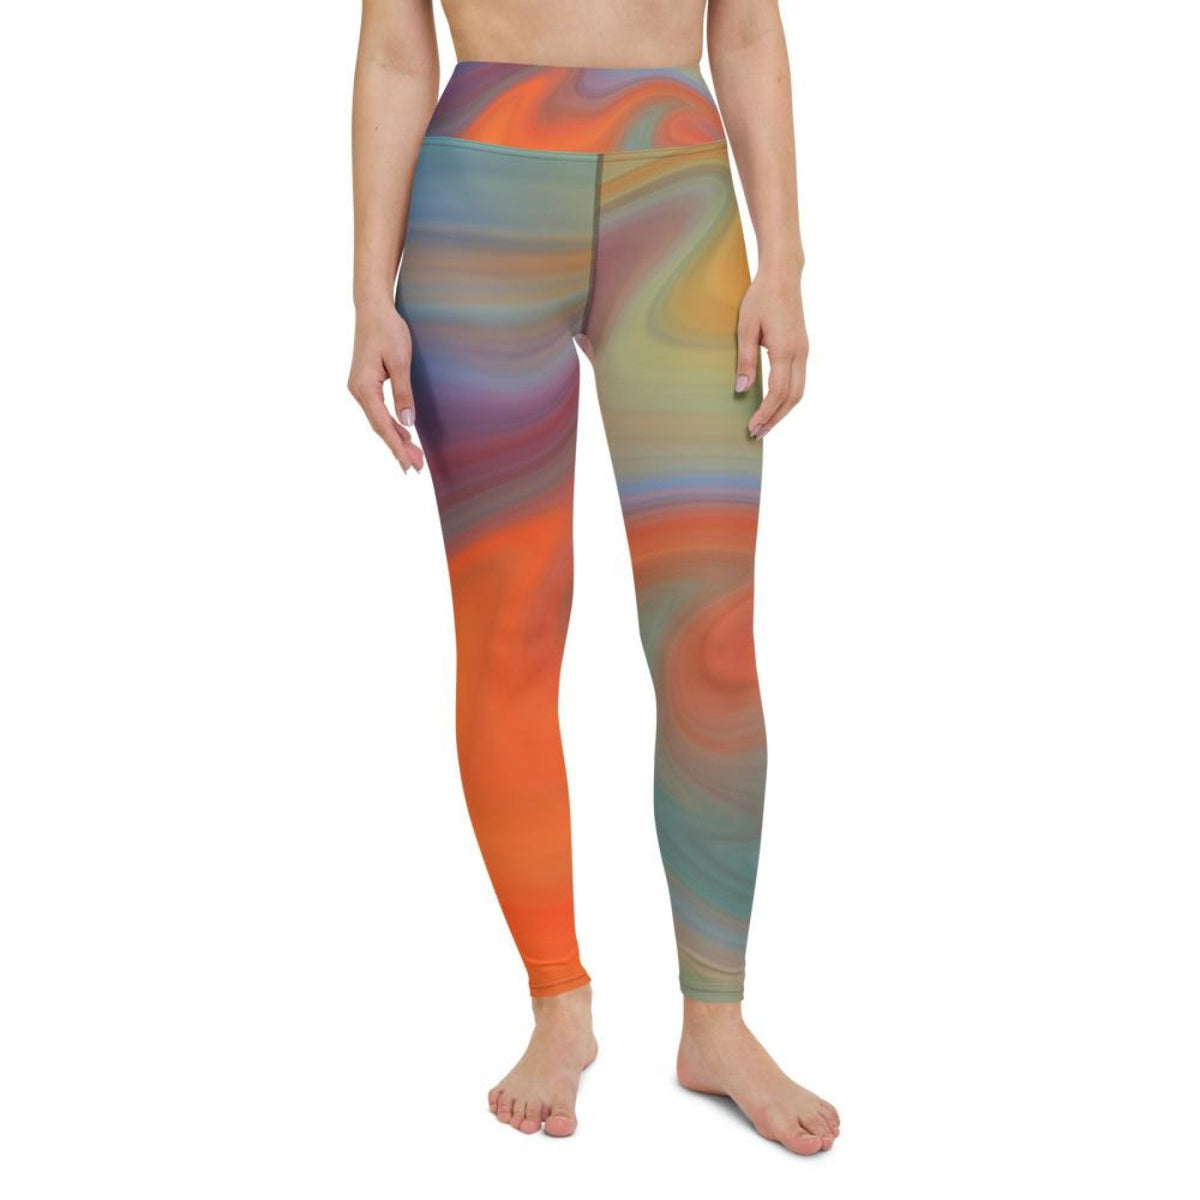 Womens Leggings - Orange Swirl Black Seam High Waist Fitness Yoga Angelwarriorfitness.com